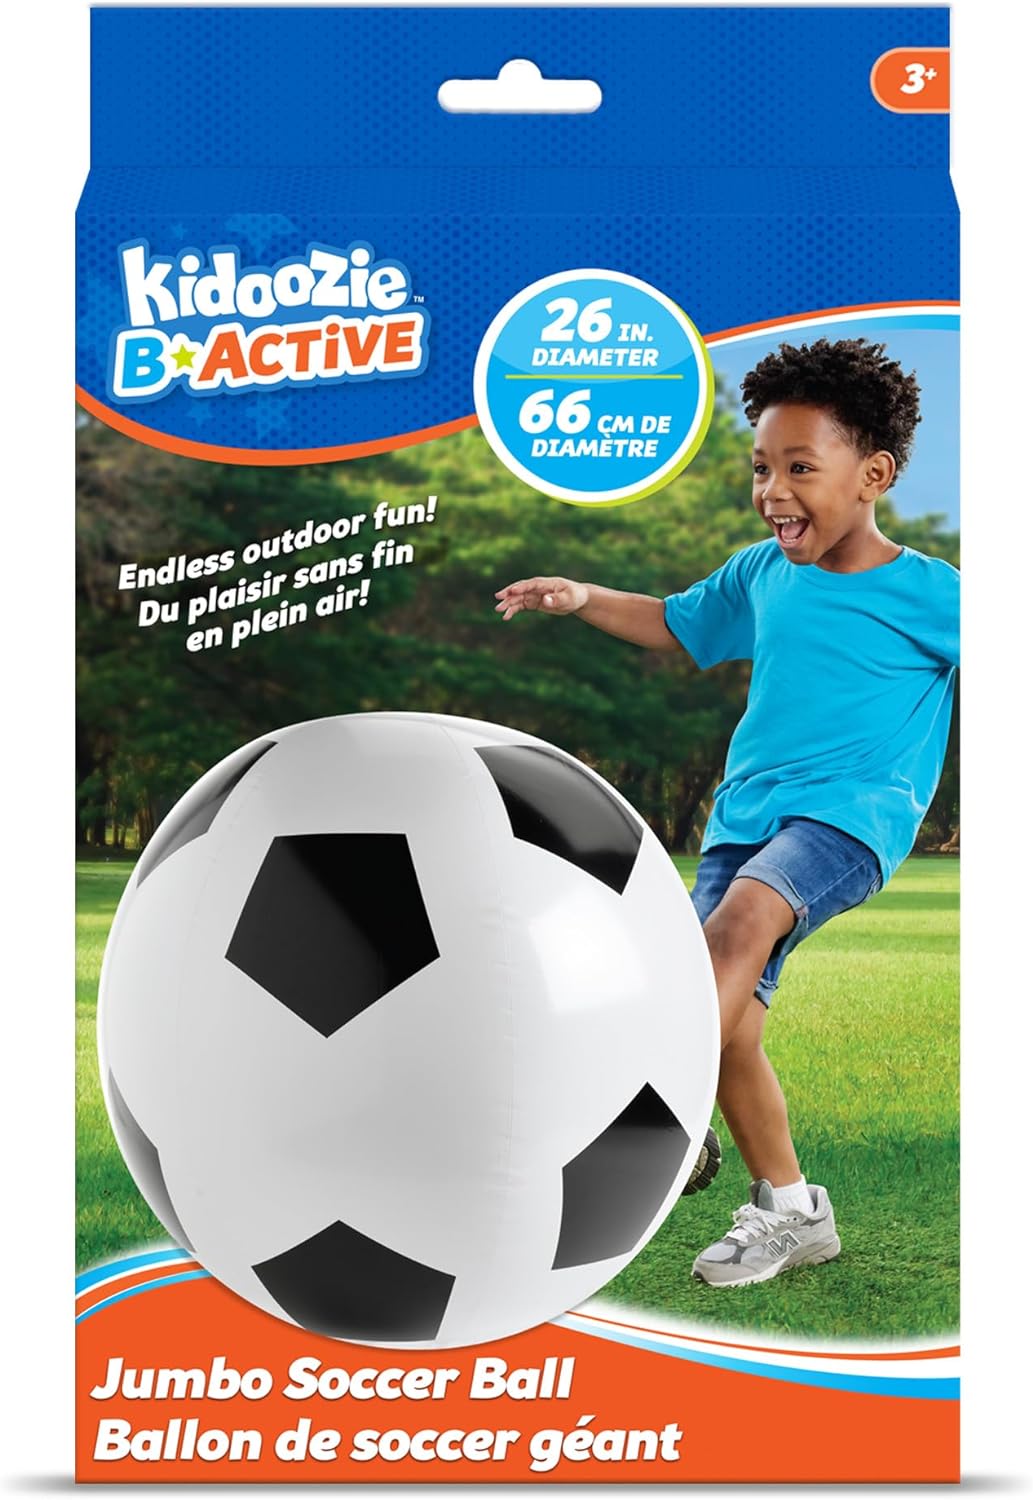 Jumbo Soccer Ball Cover